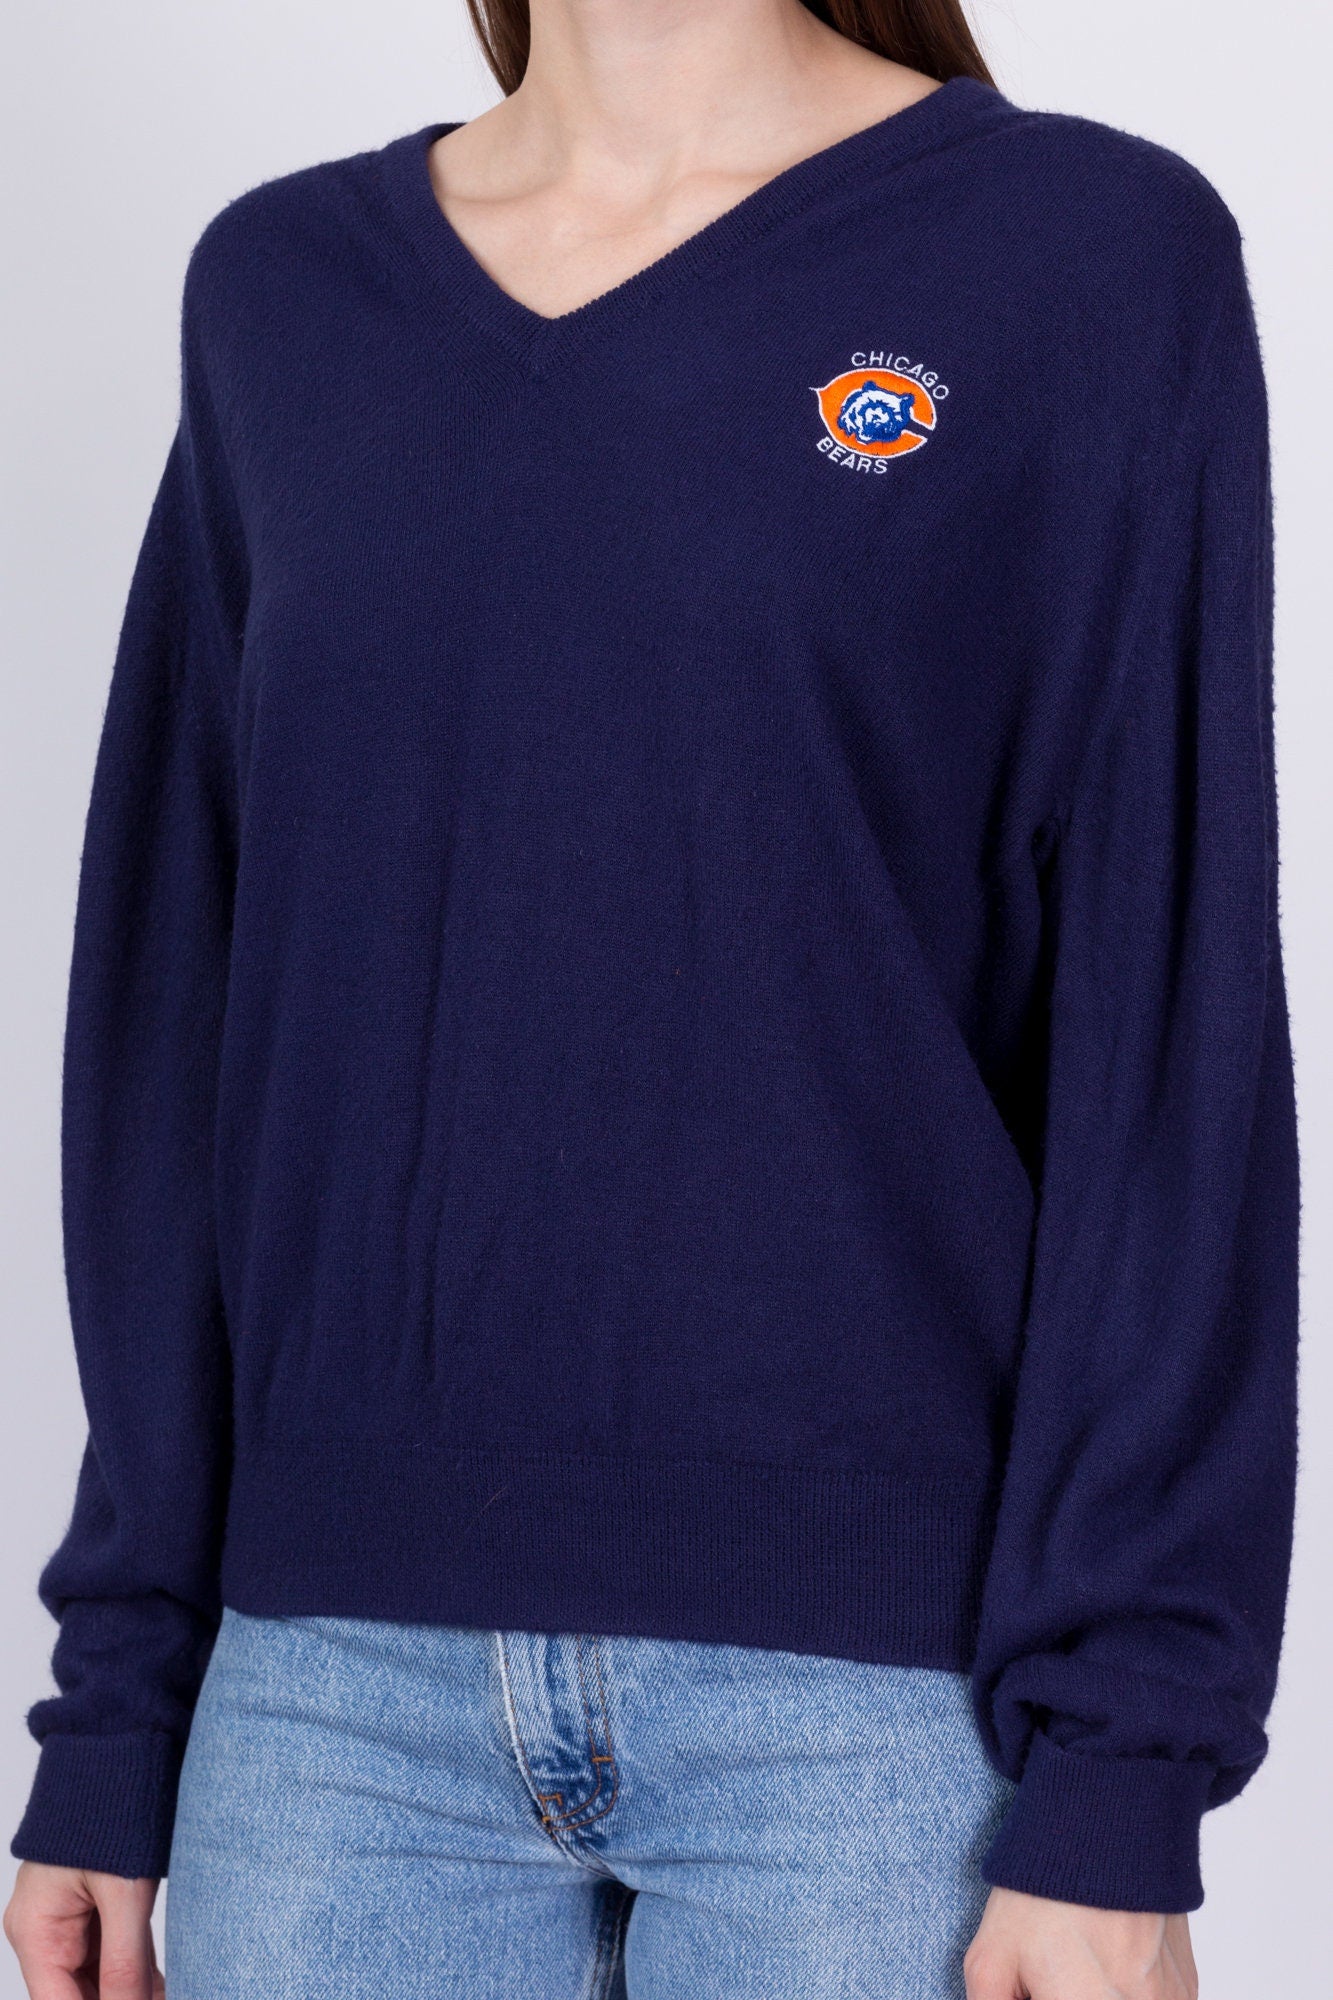 70s Chicago Bears V Neck Sweater - Men's Medium 